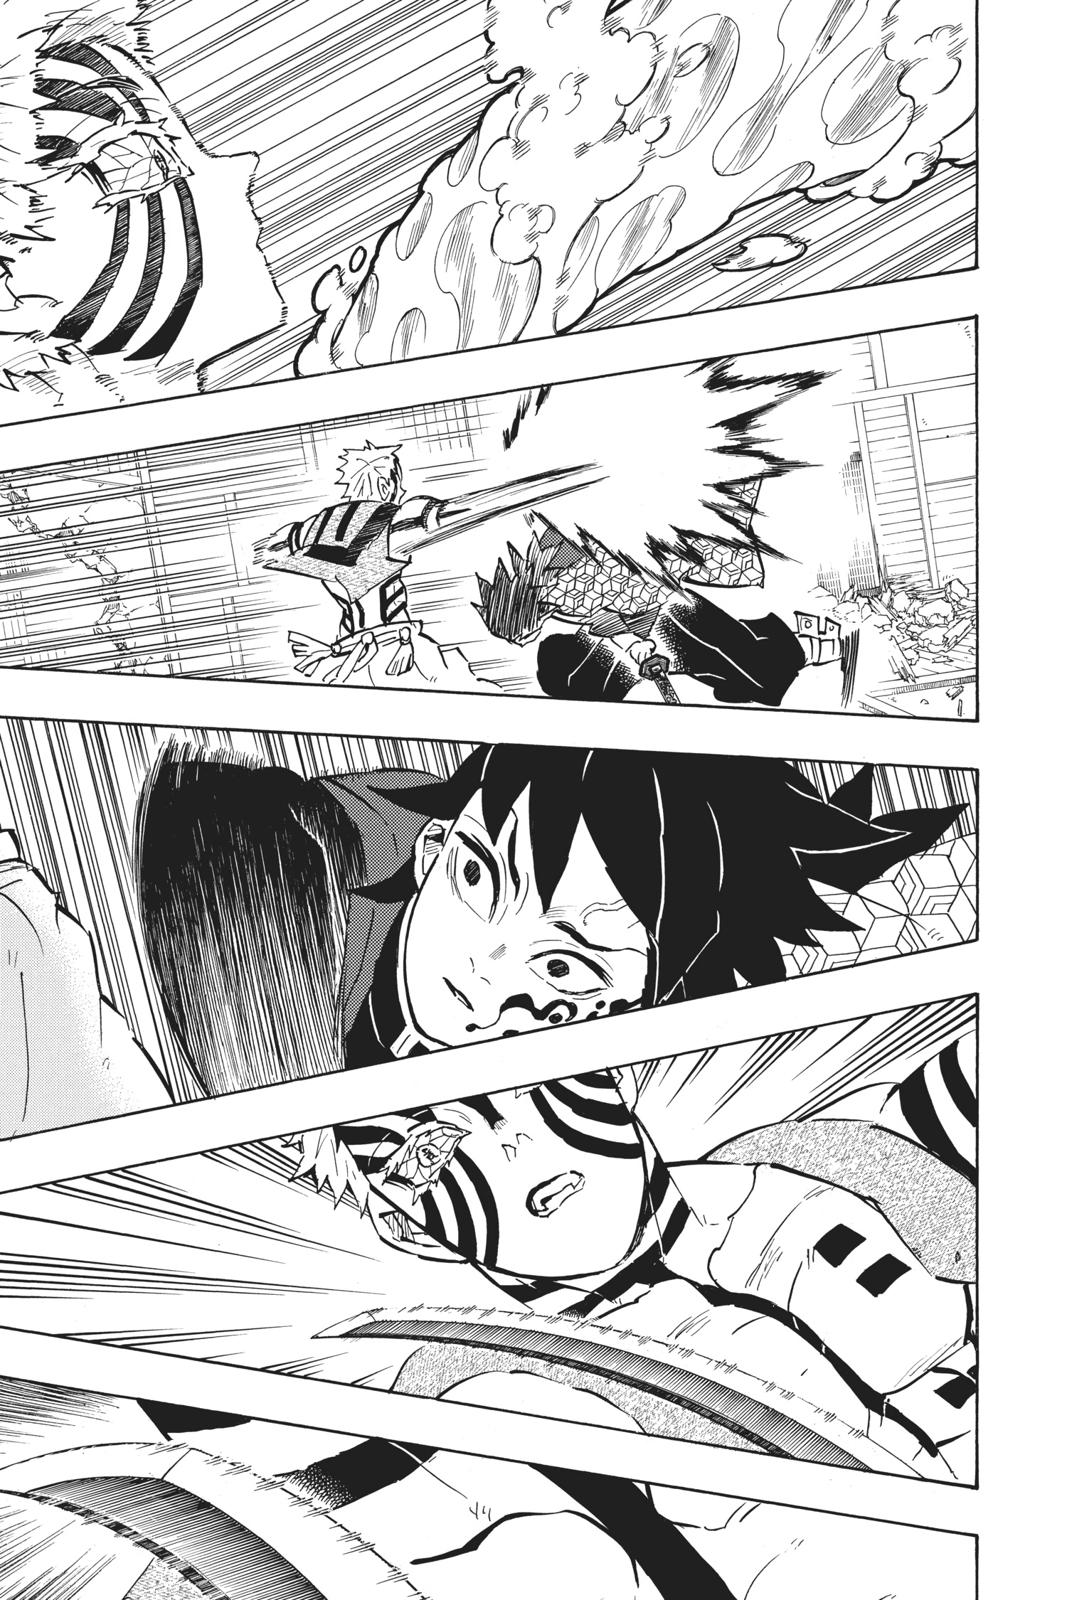 Demon Slayer Manga Manga Chapter - 150 - image 3